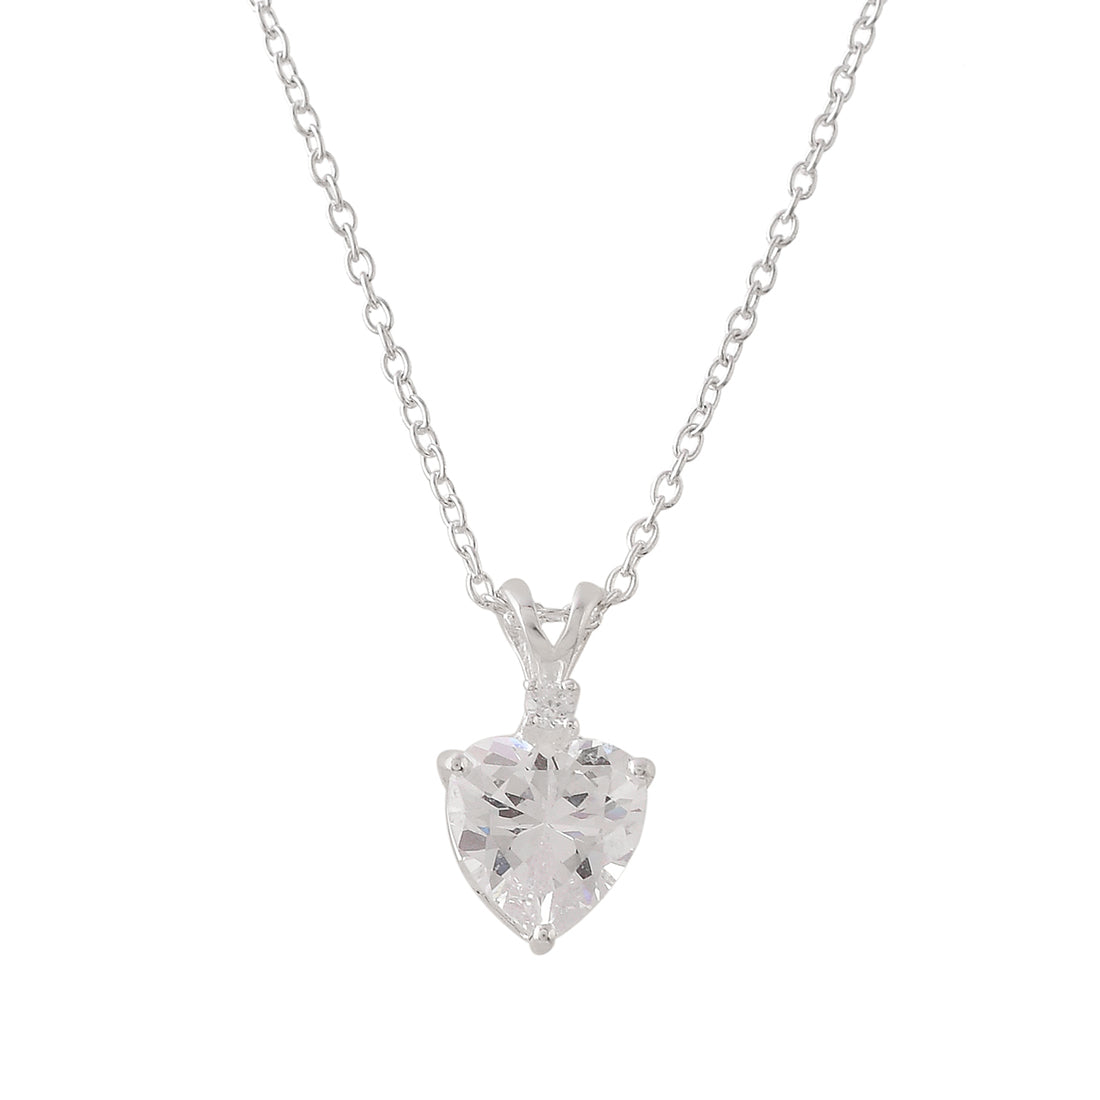 Women's Heart-Shape Beautiful 925 Sterling Silver Pendant - Voylla